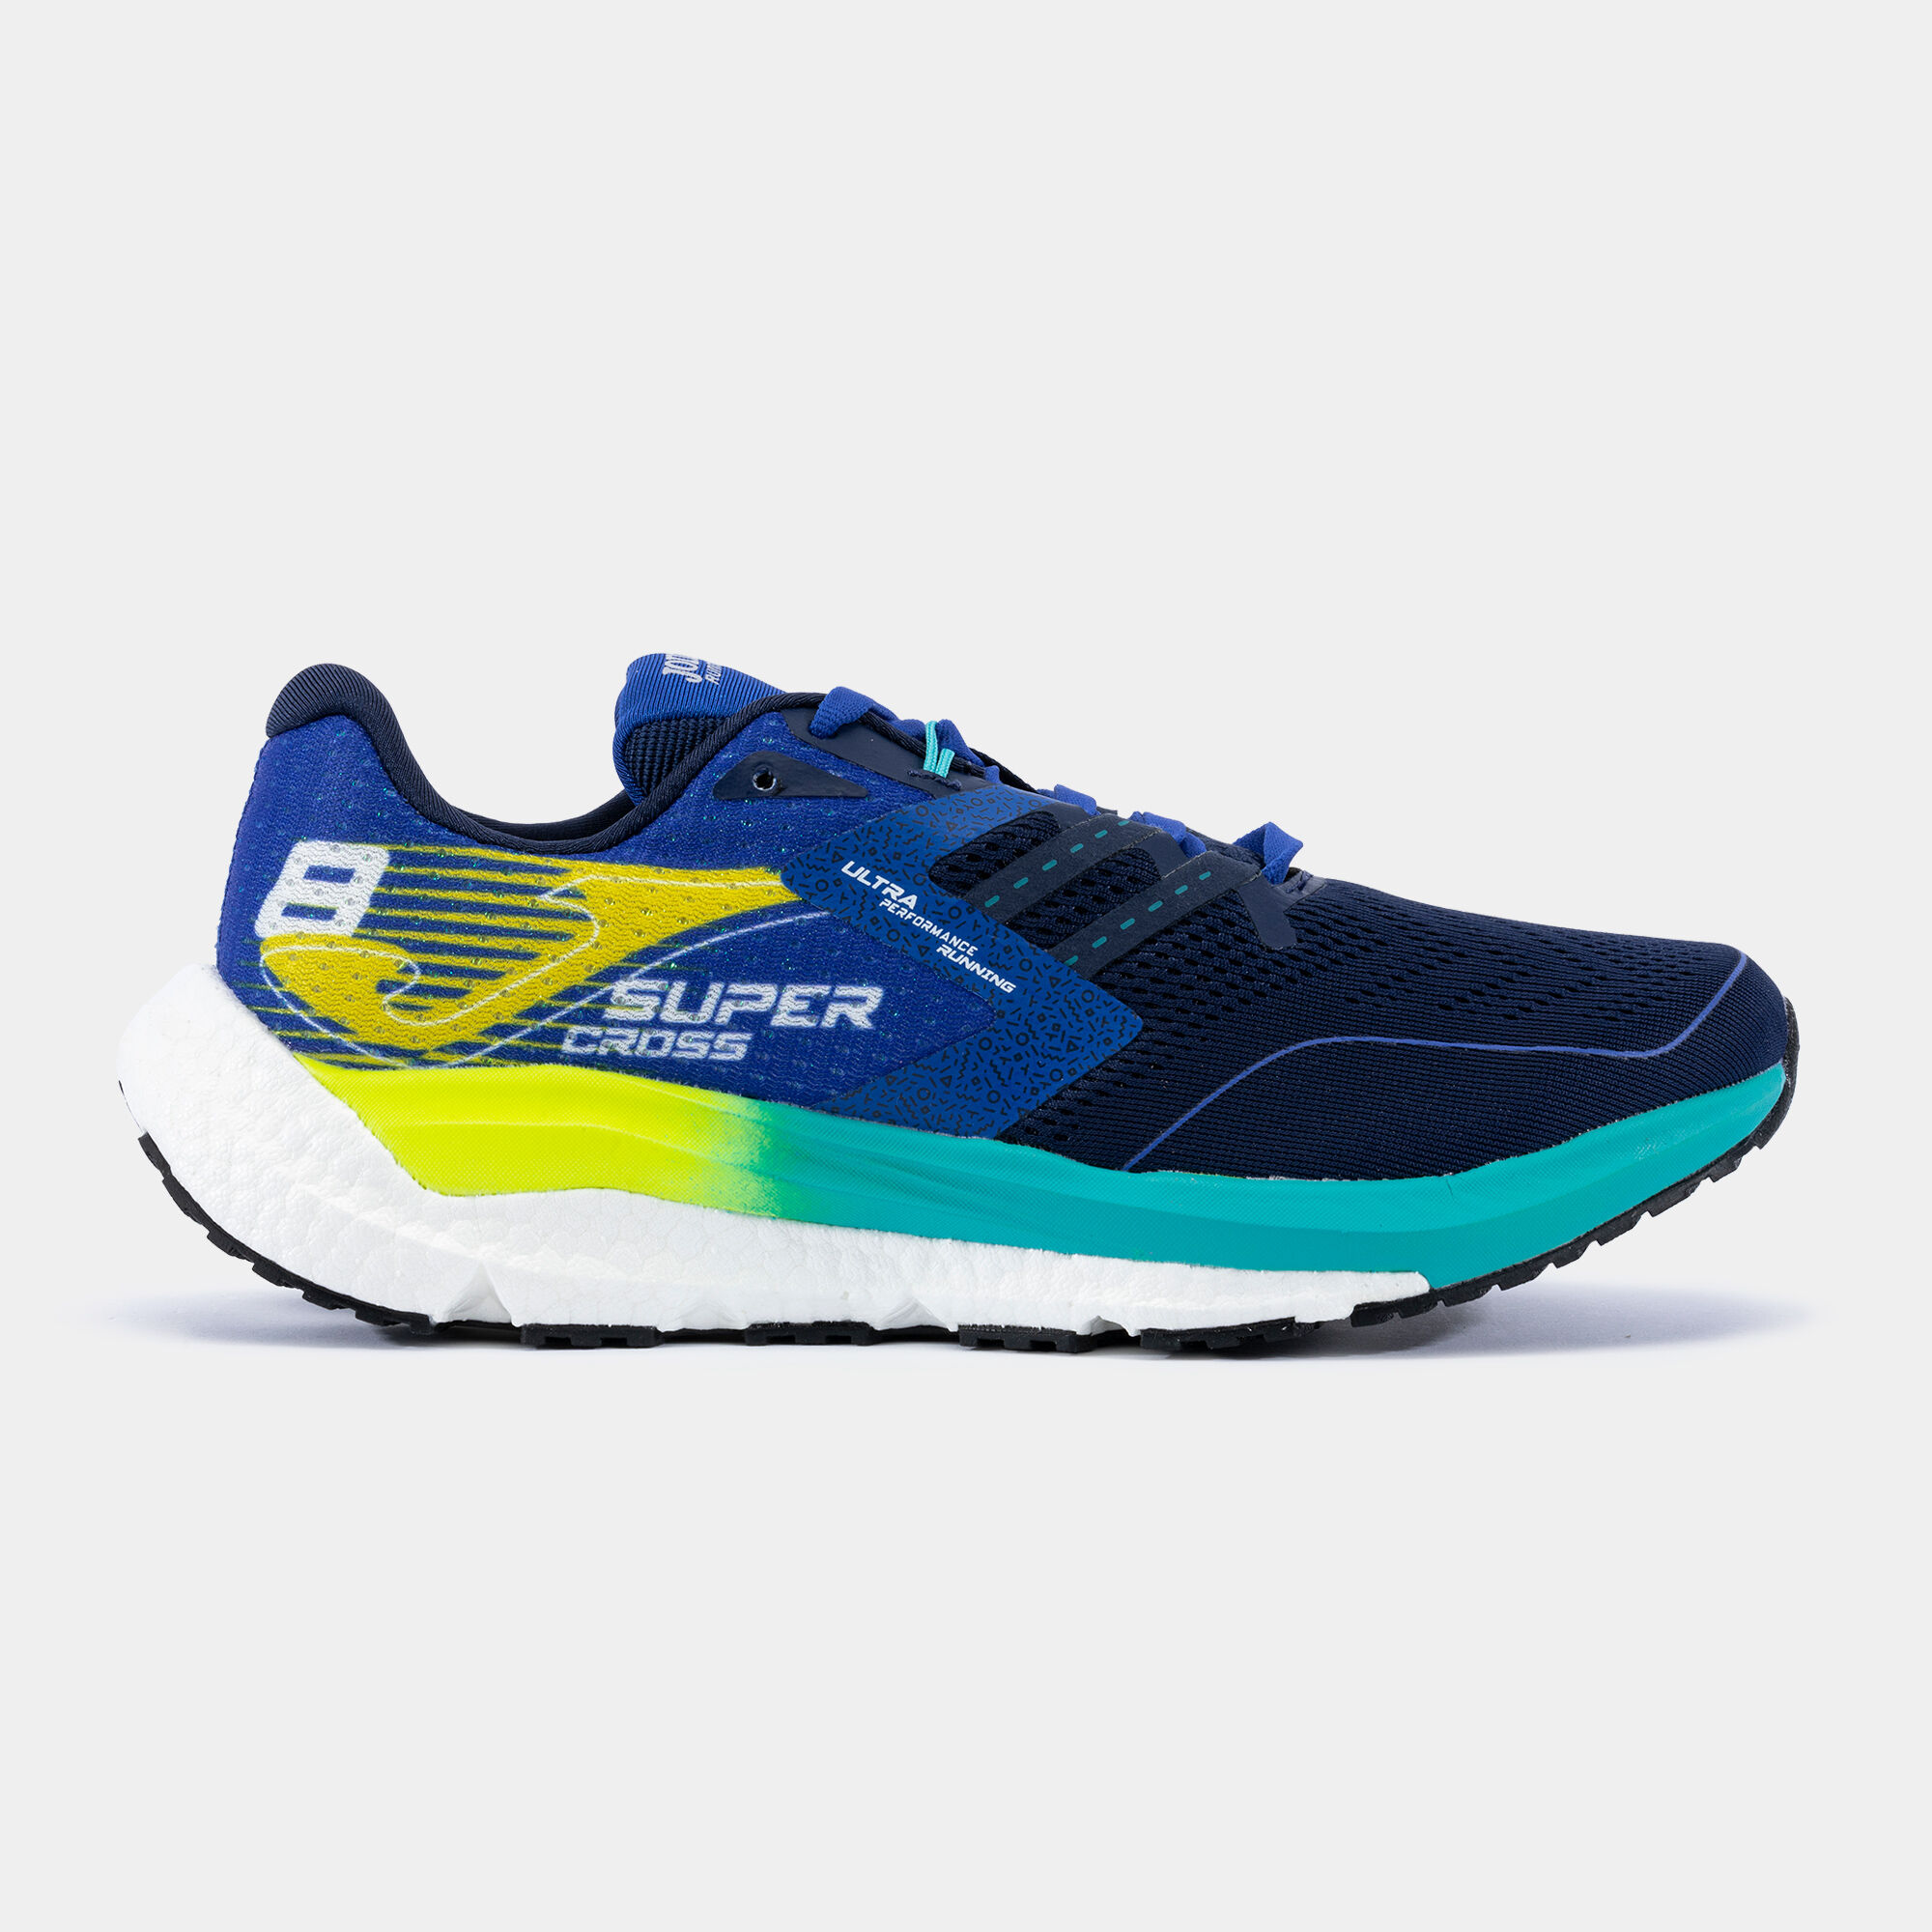 Pantofi sport alergare R.Supercross 23 bărbaȚi bleumarin albastru electric